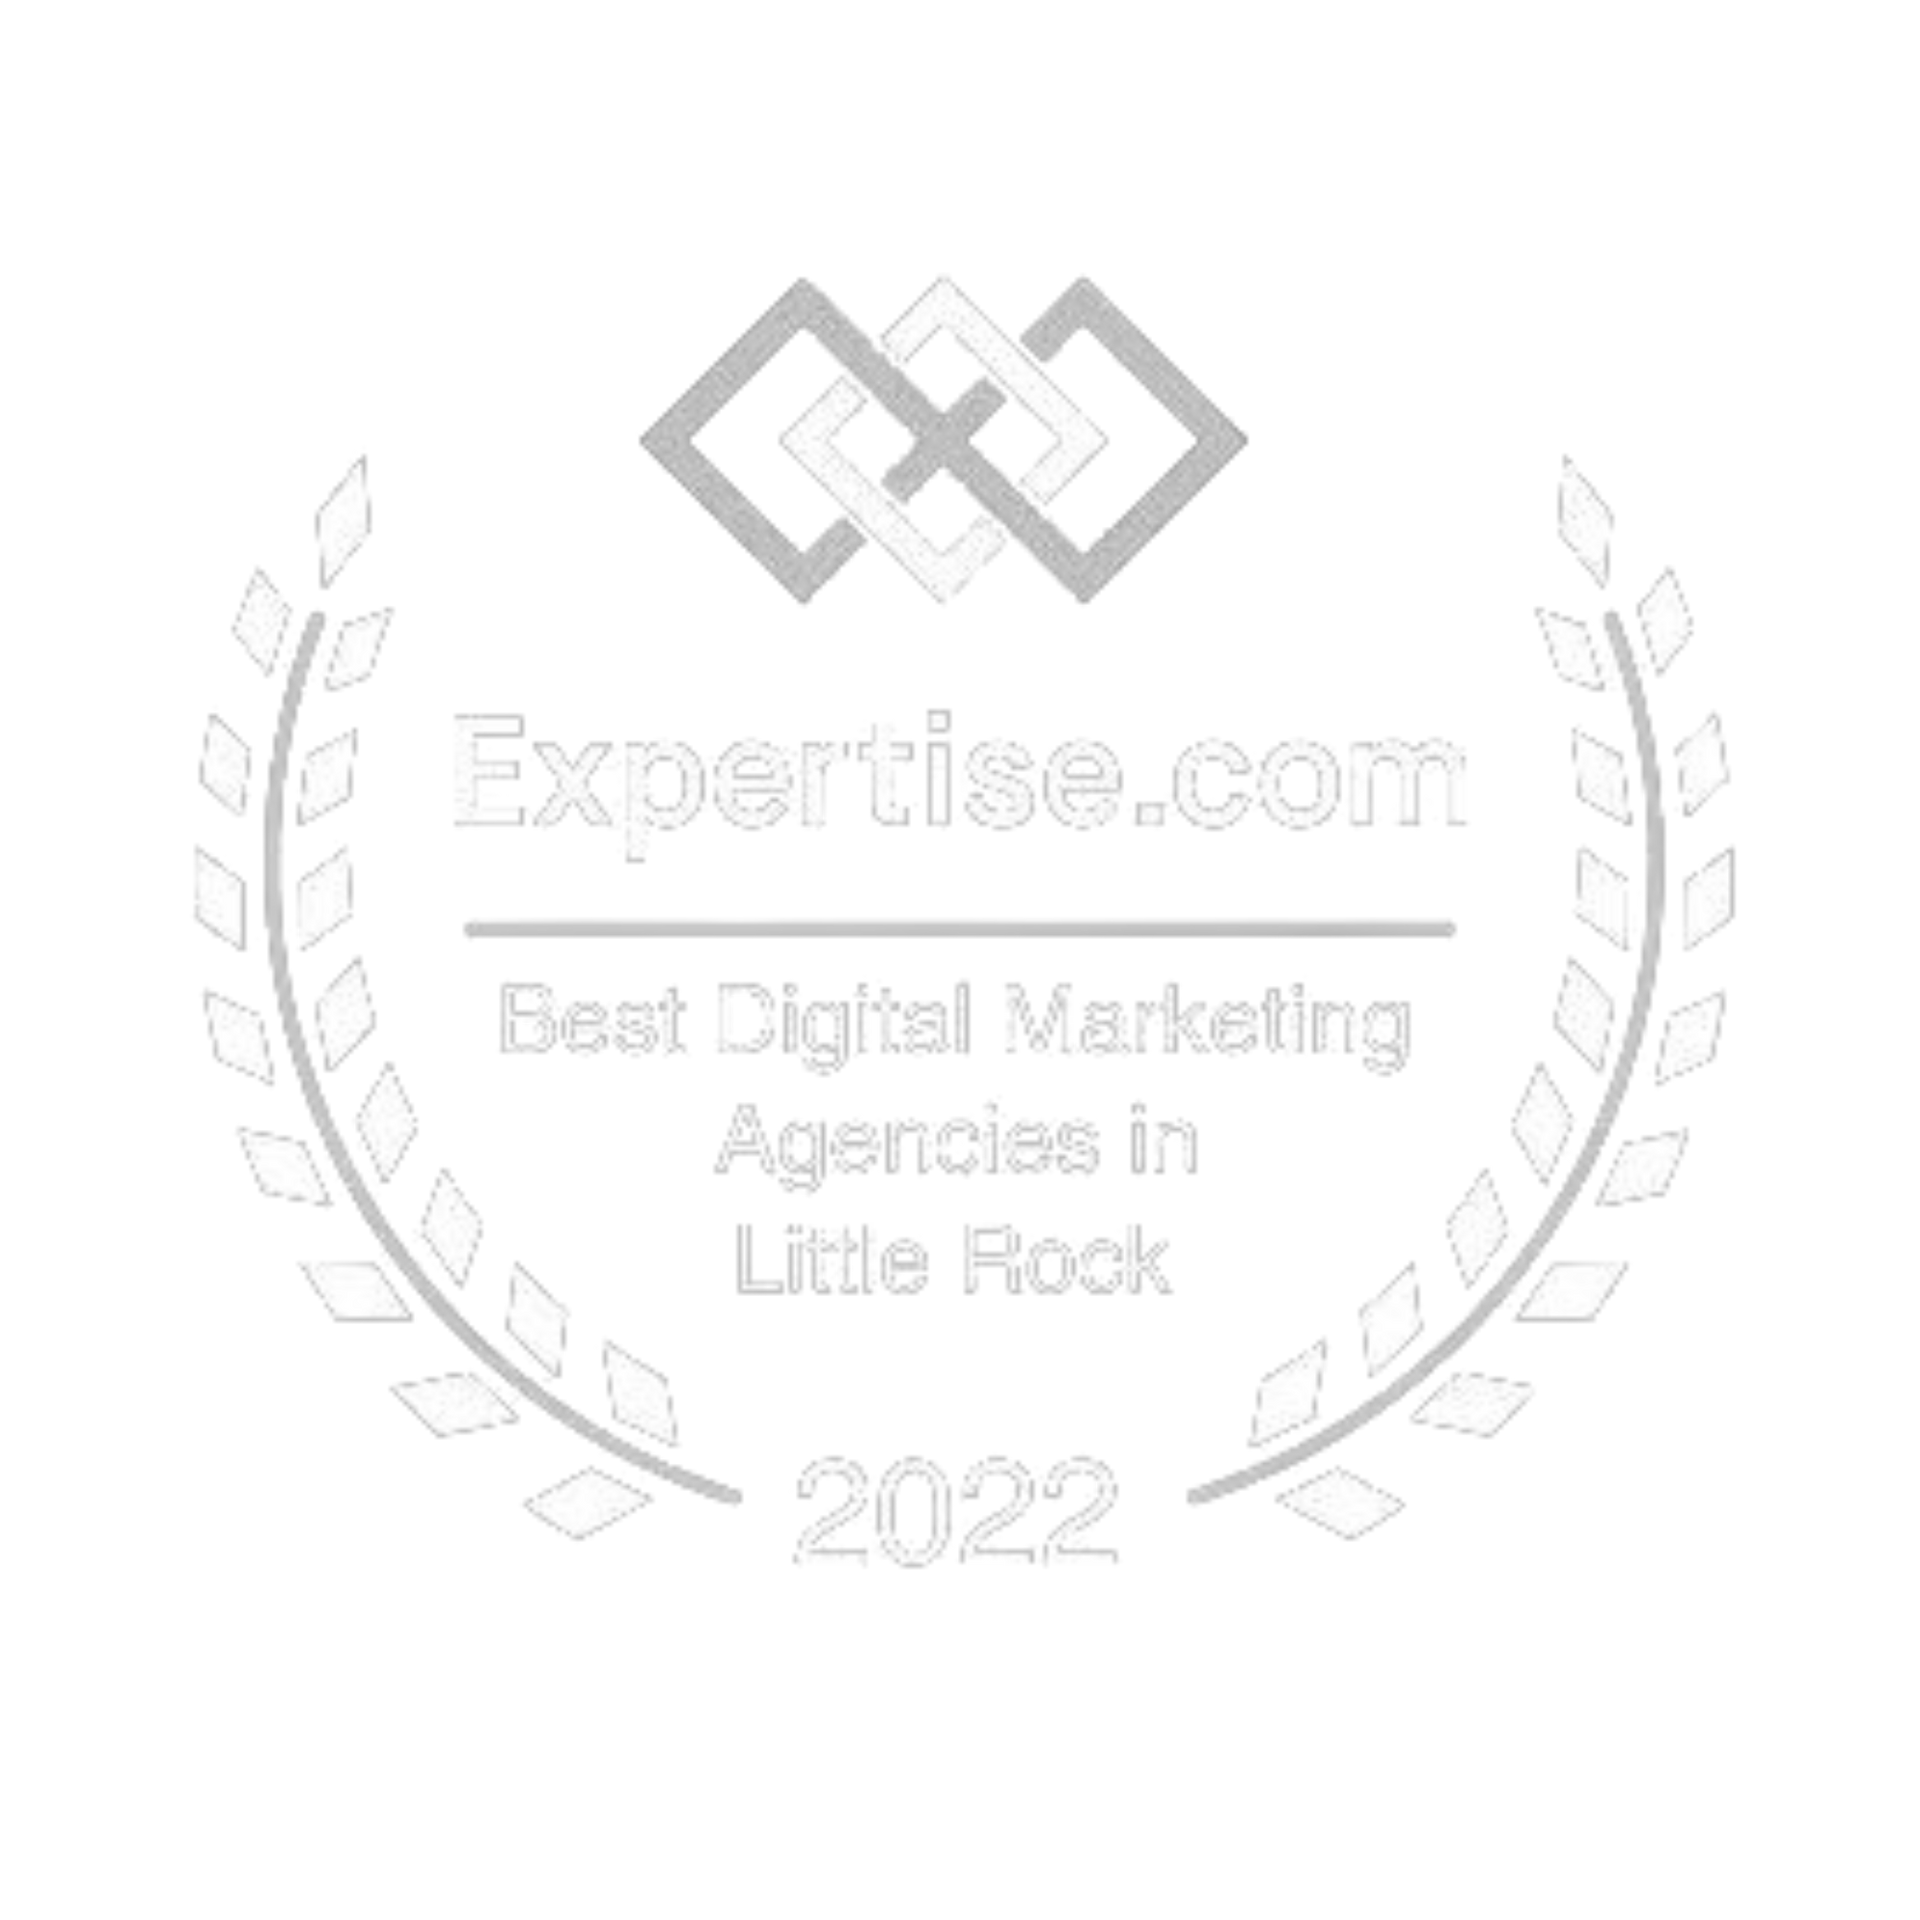 Best Digital Marketing Agencies in Little Rock 2022